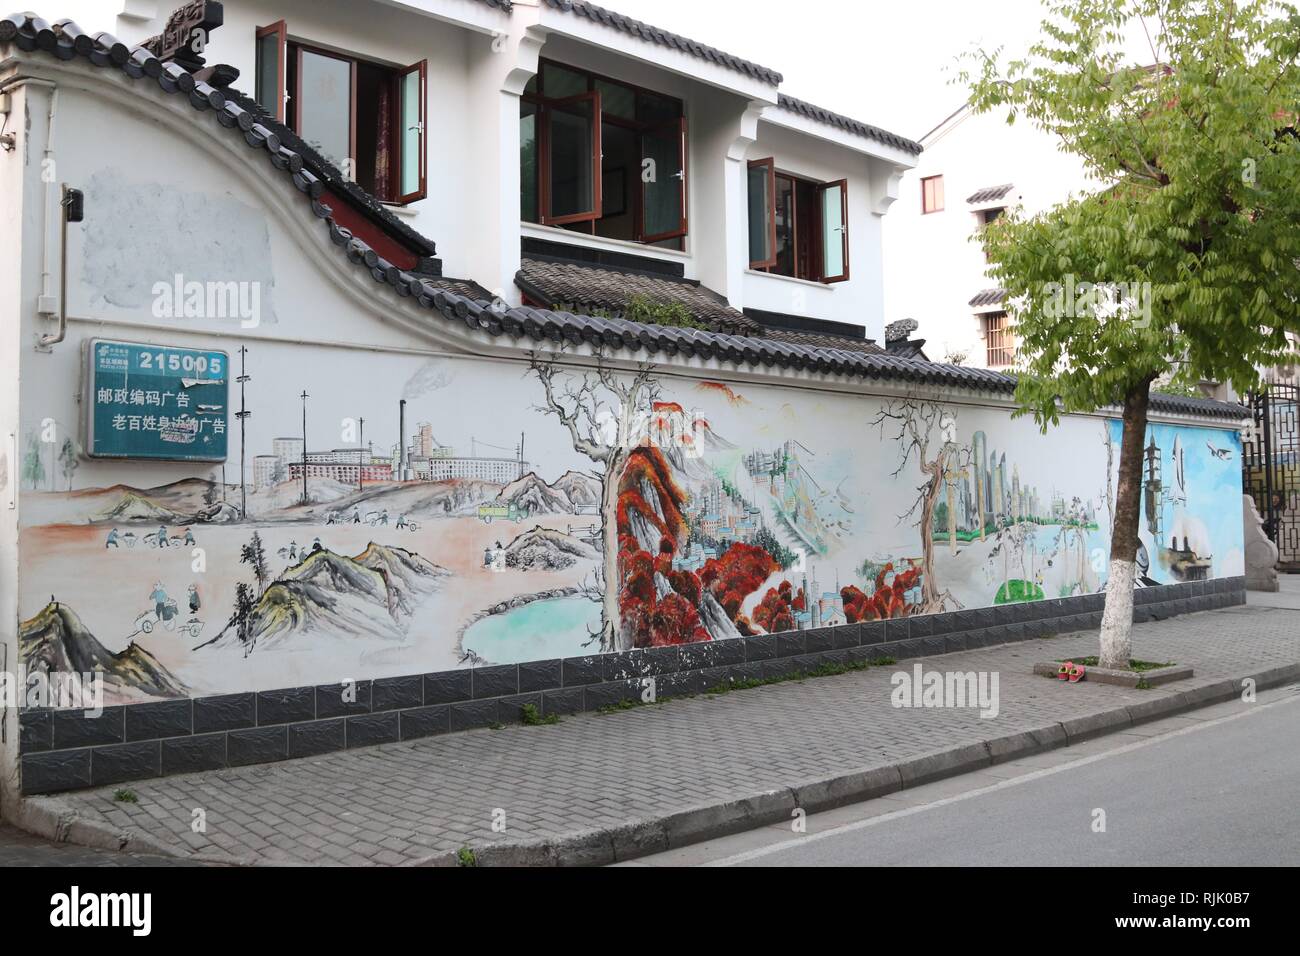 Suzhou, Jiangsu, mur peint à la gloire de la ville, dans un quartier touristique Banque D'Images